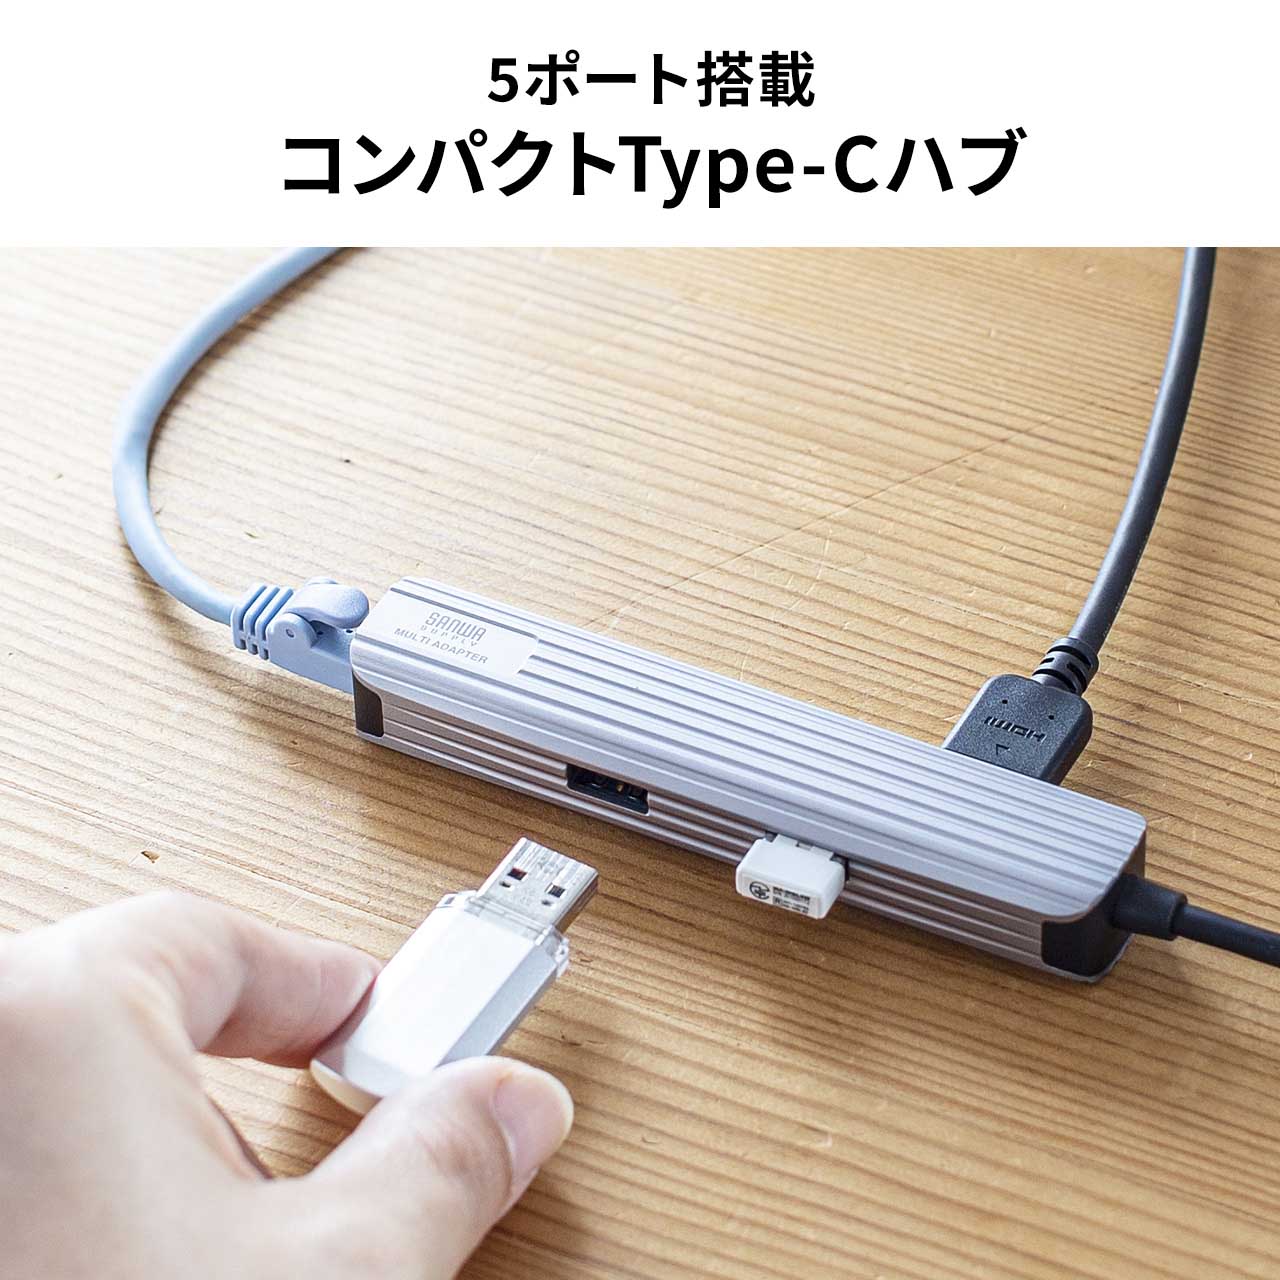 ドッキングステーション USB Type-C ハブ USBハブ USB-A×3 ３つ HDMI 4K 60Hz 有線LAN 拡張 増設 小型 アルミ  ケーブル長50cm 400-HUBC13GM